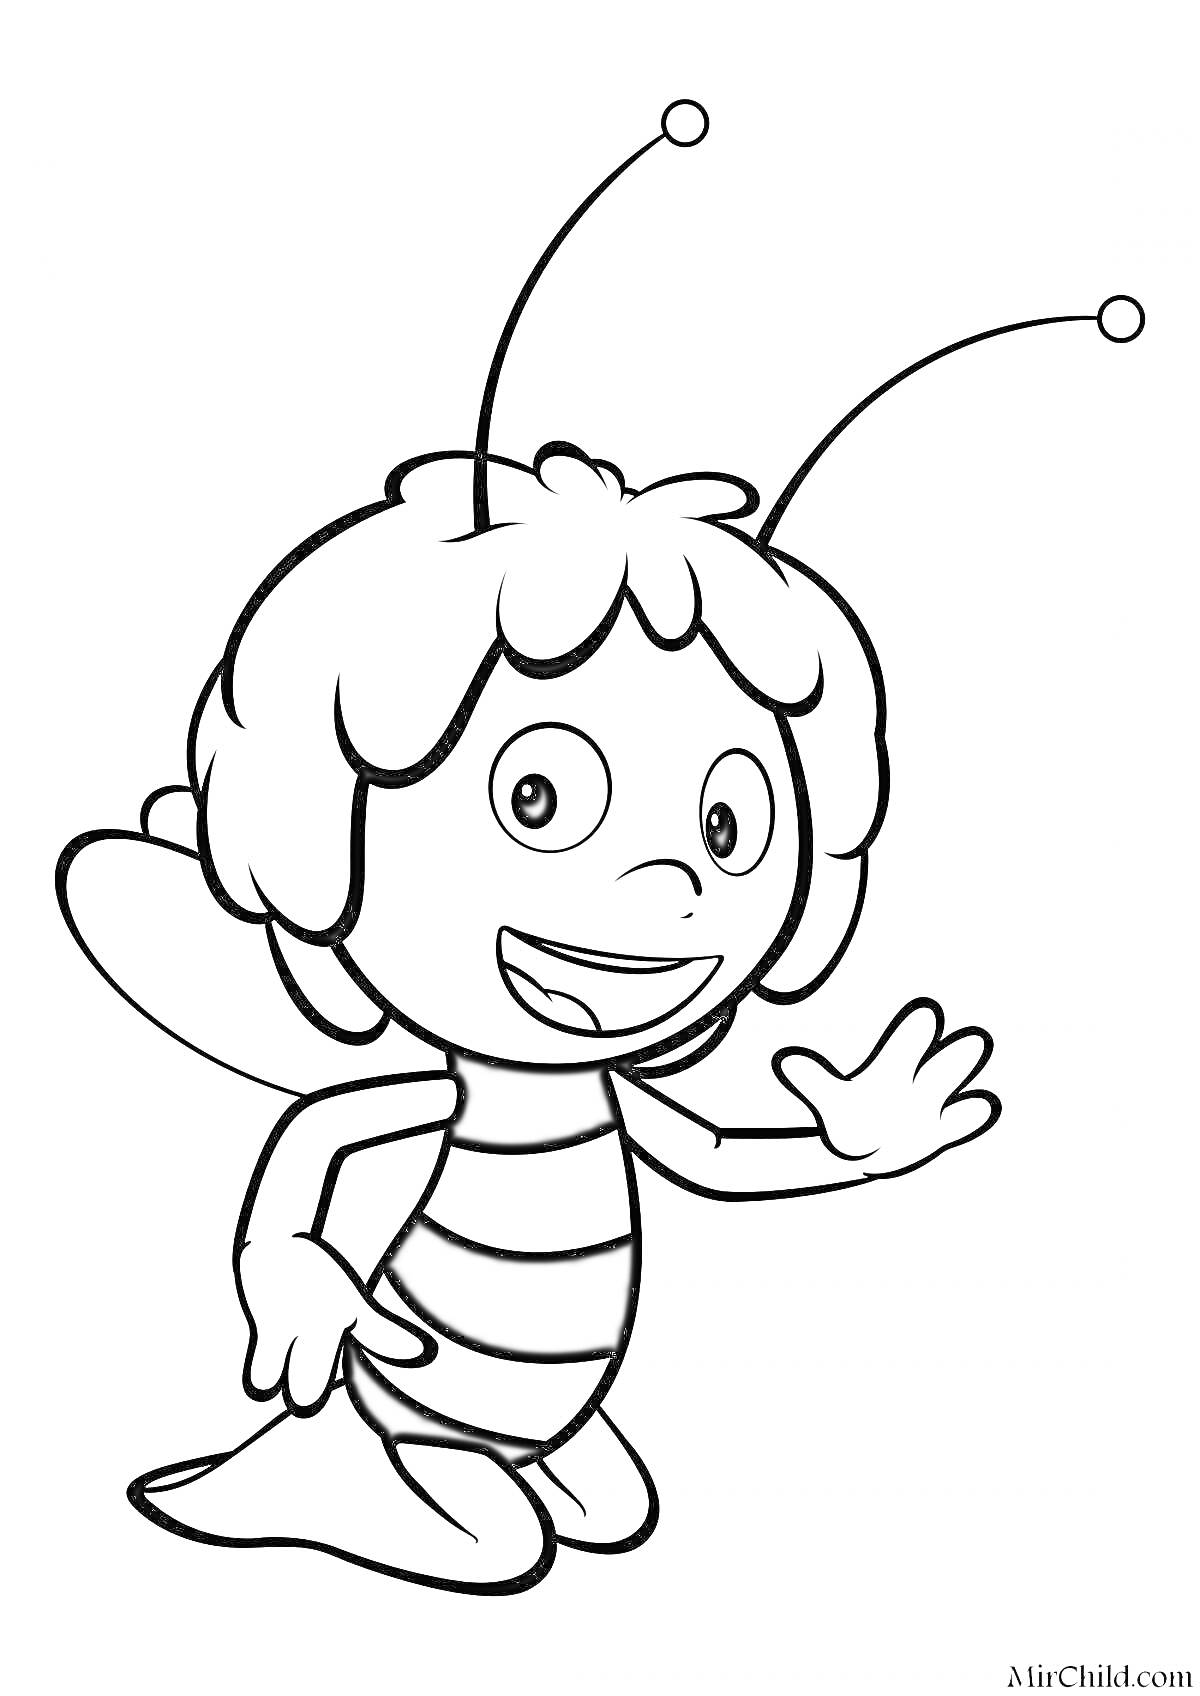 Раскраска Пчелка с большими глазами и антеннами на голове, машущая рукой